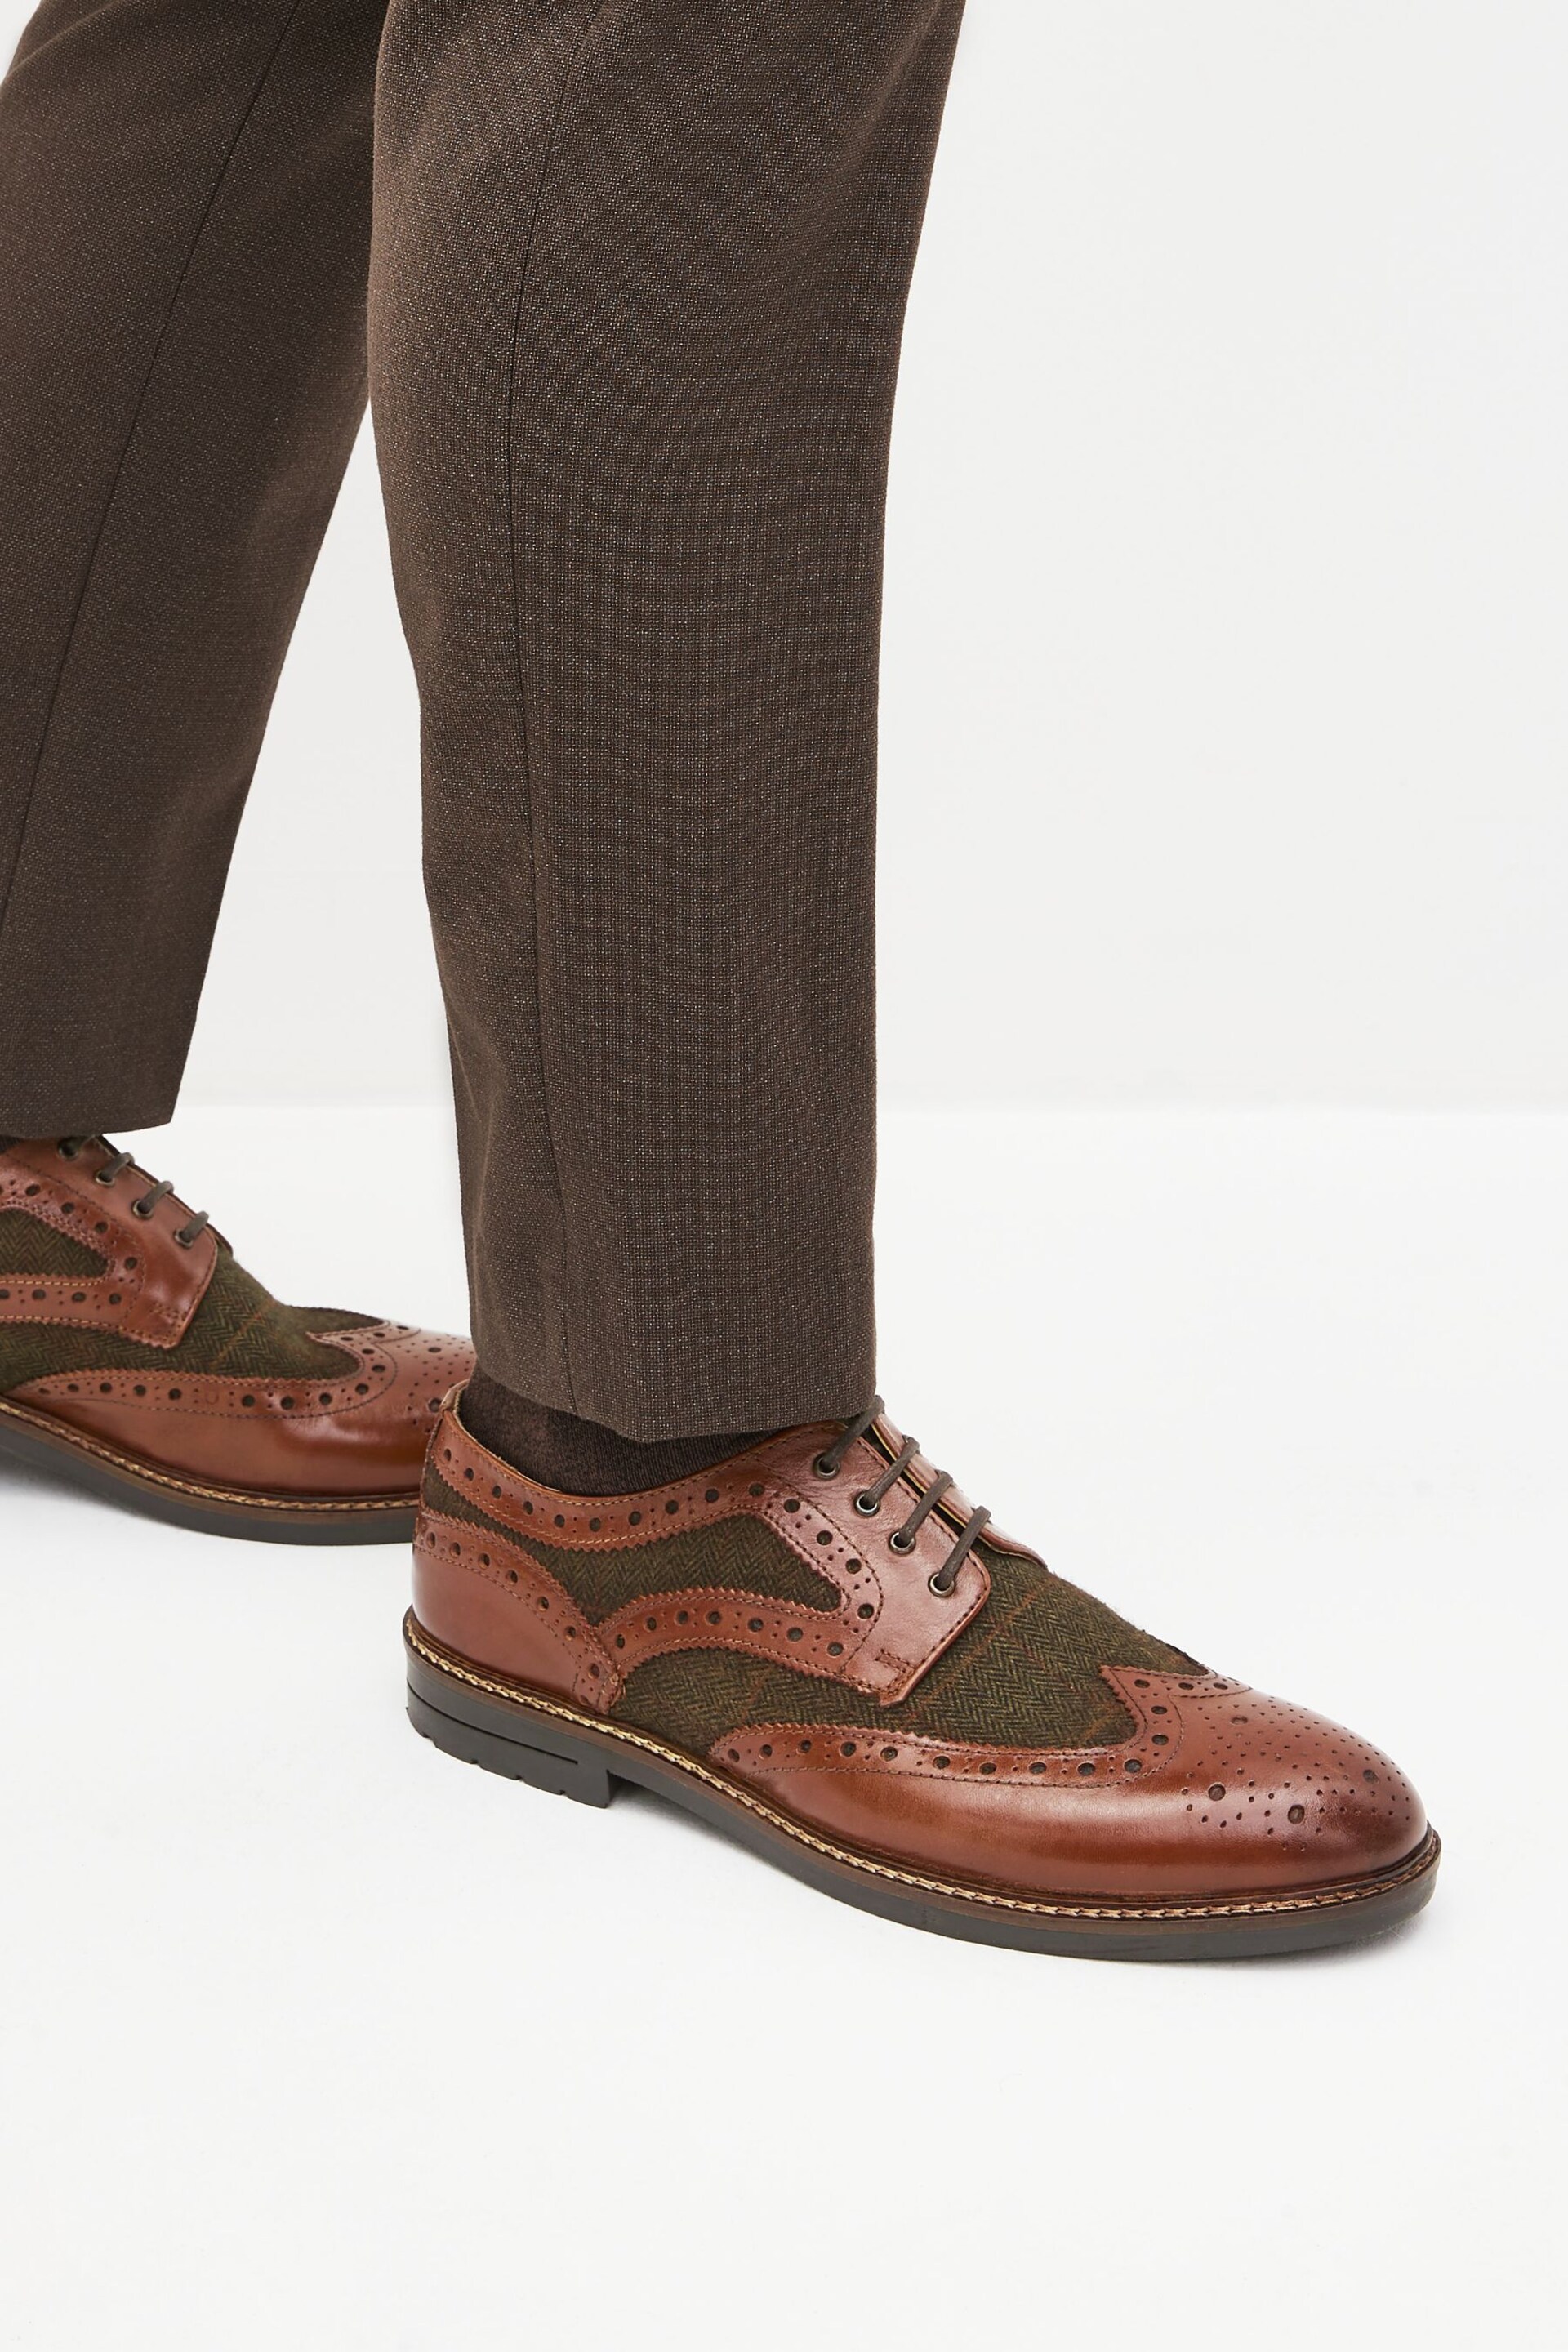 Tan Brown Leather Tweed Detail Brogues - Image 6 of 6